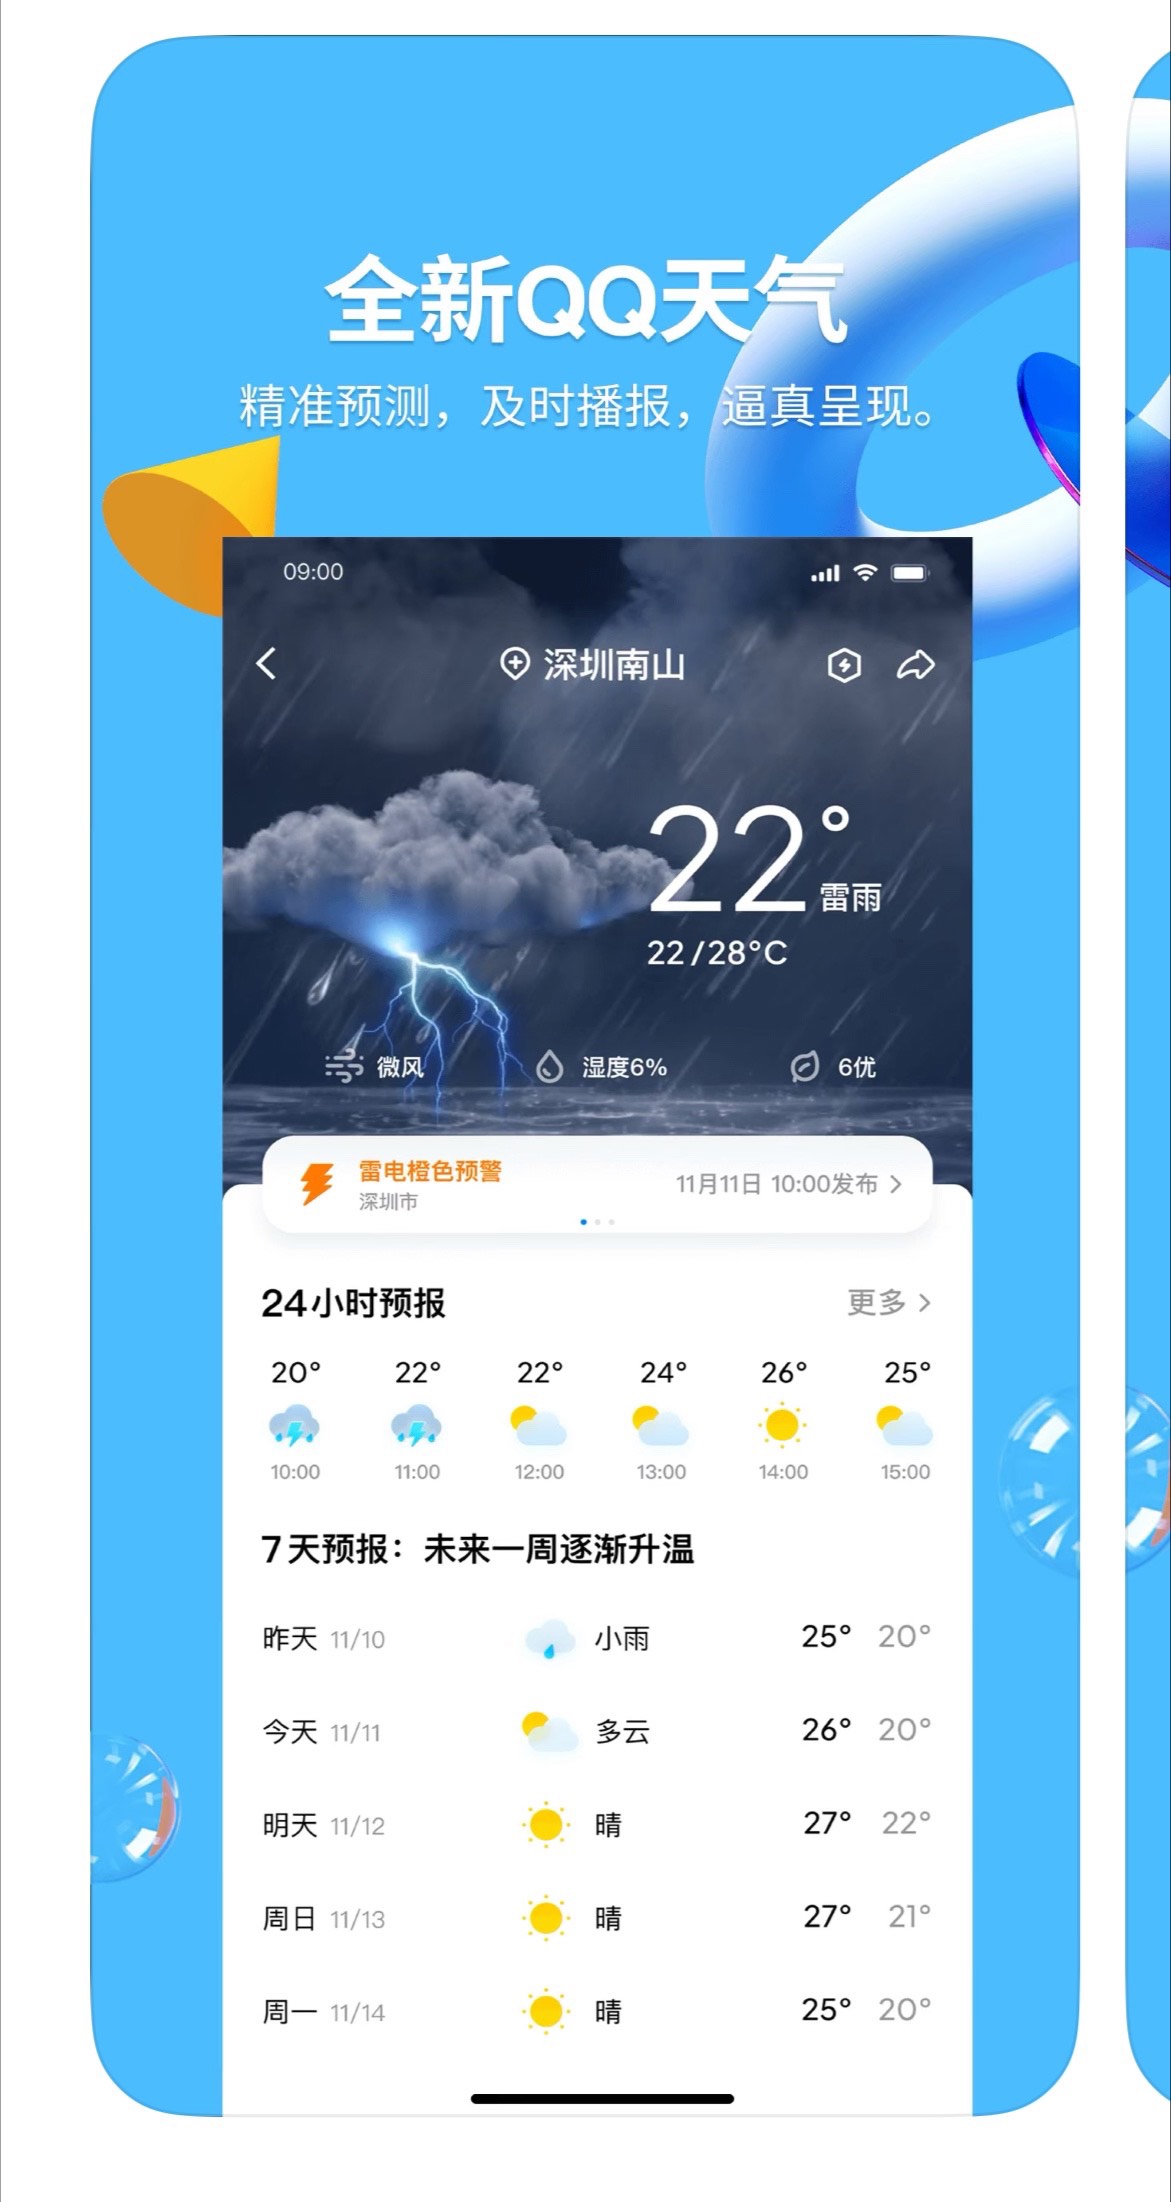 腾讯 QQ iOS 版 8.9.39 正式版发布：新